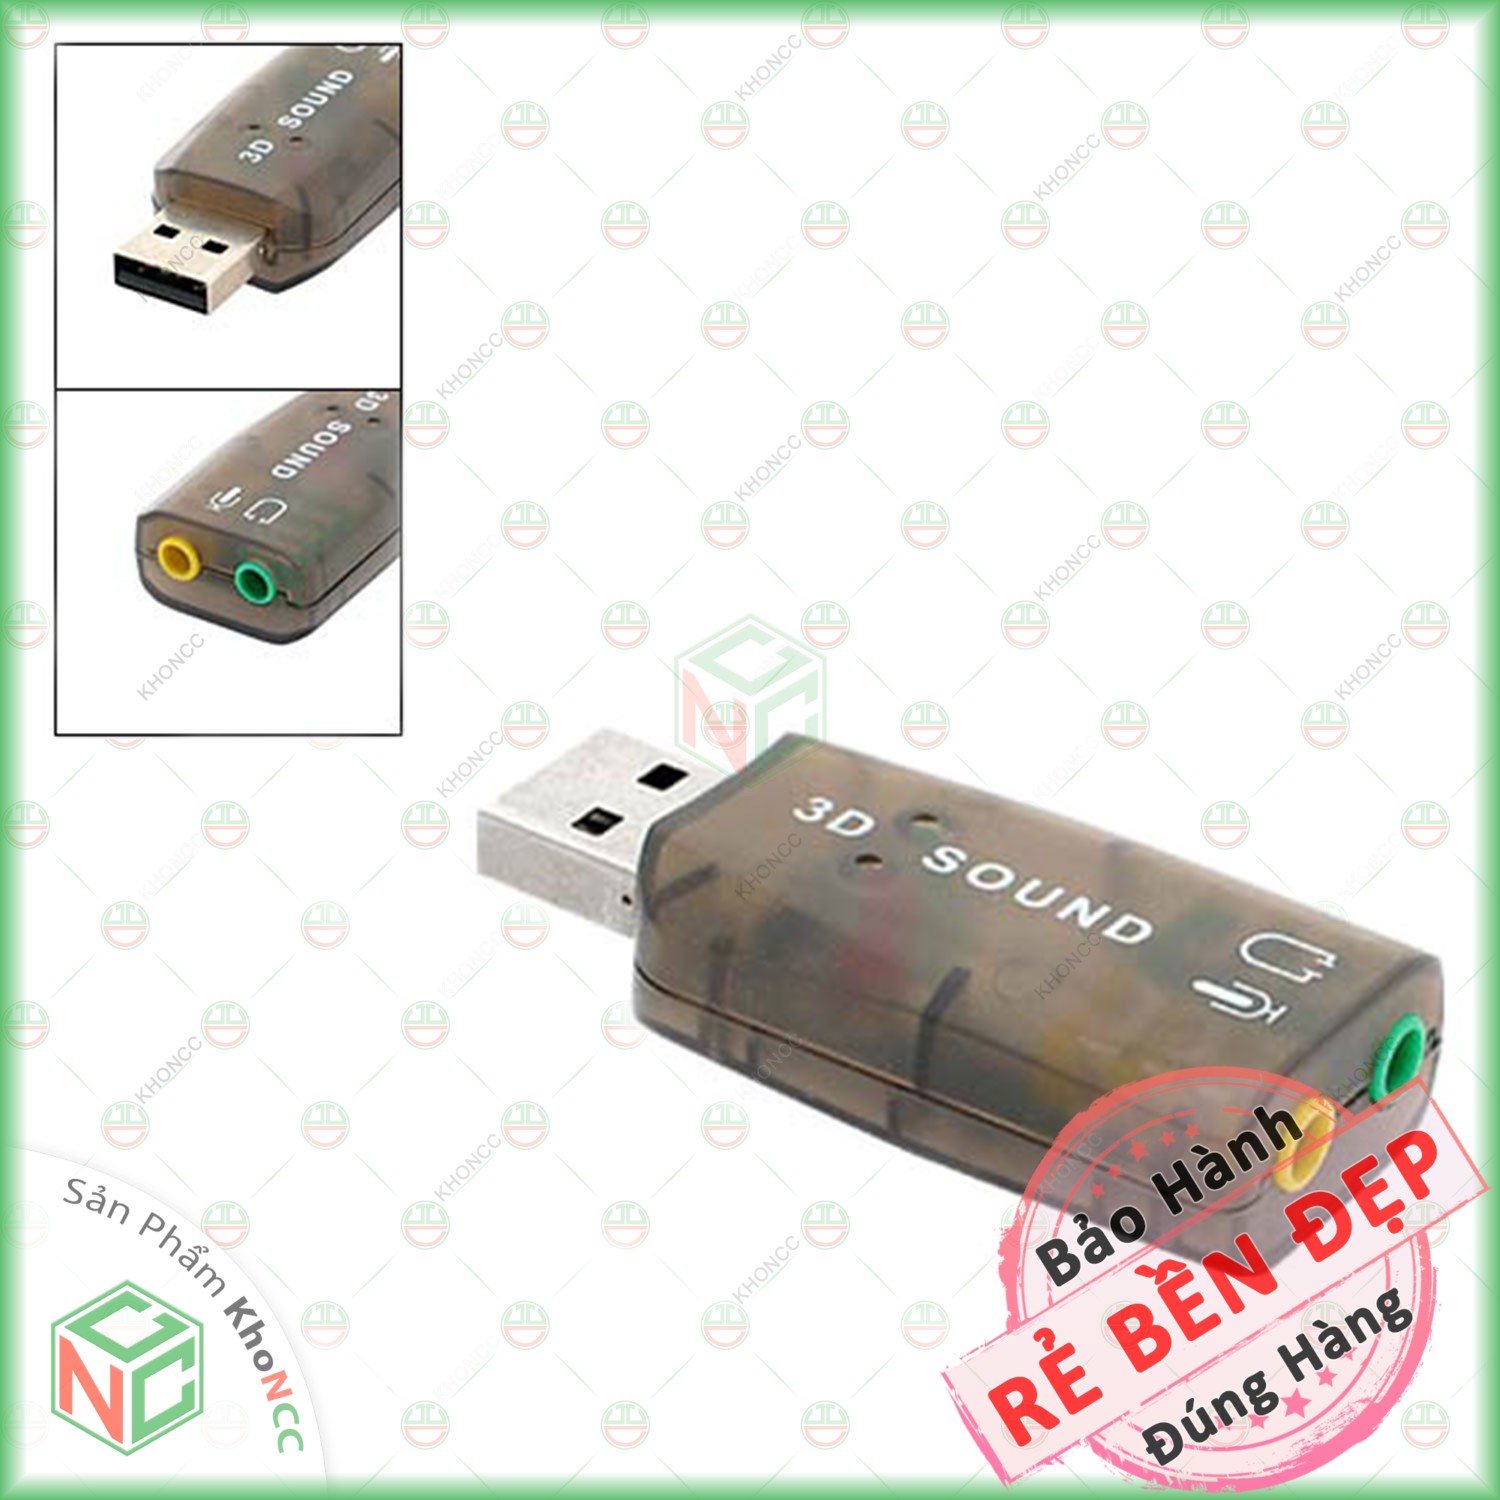 [Thay Thế] USB Sound Card KhoNCC Hàng Chính Hãng Gắn Cho Máy Tính - Laptop Bị Lỗi Âm Thanh Gắn Qua Cổng USB - NLVQ-192-USBS